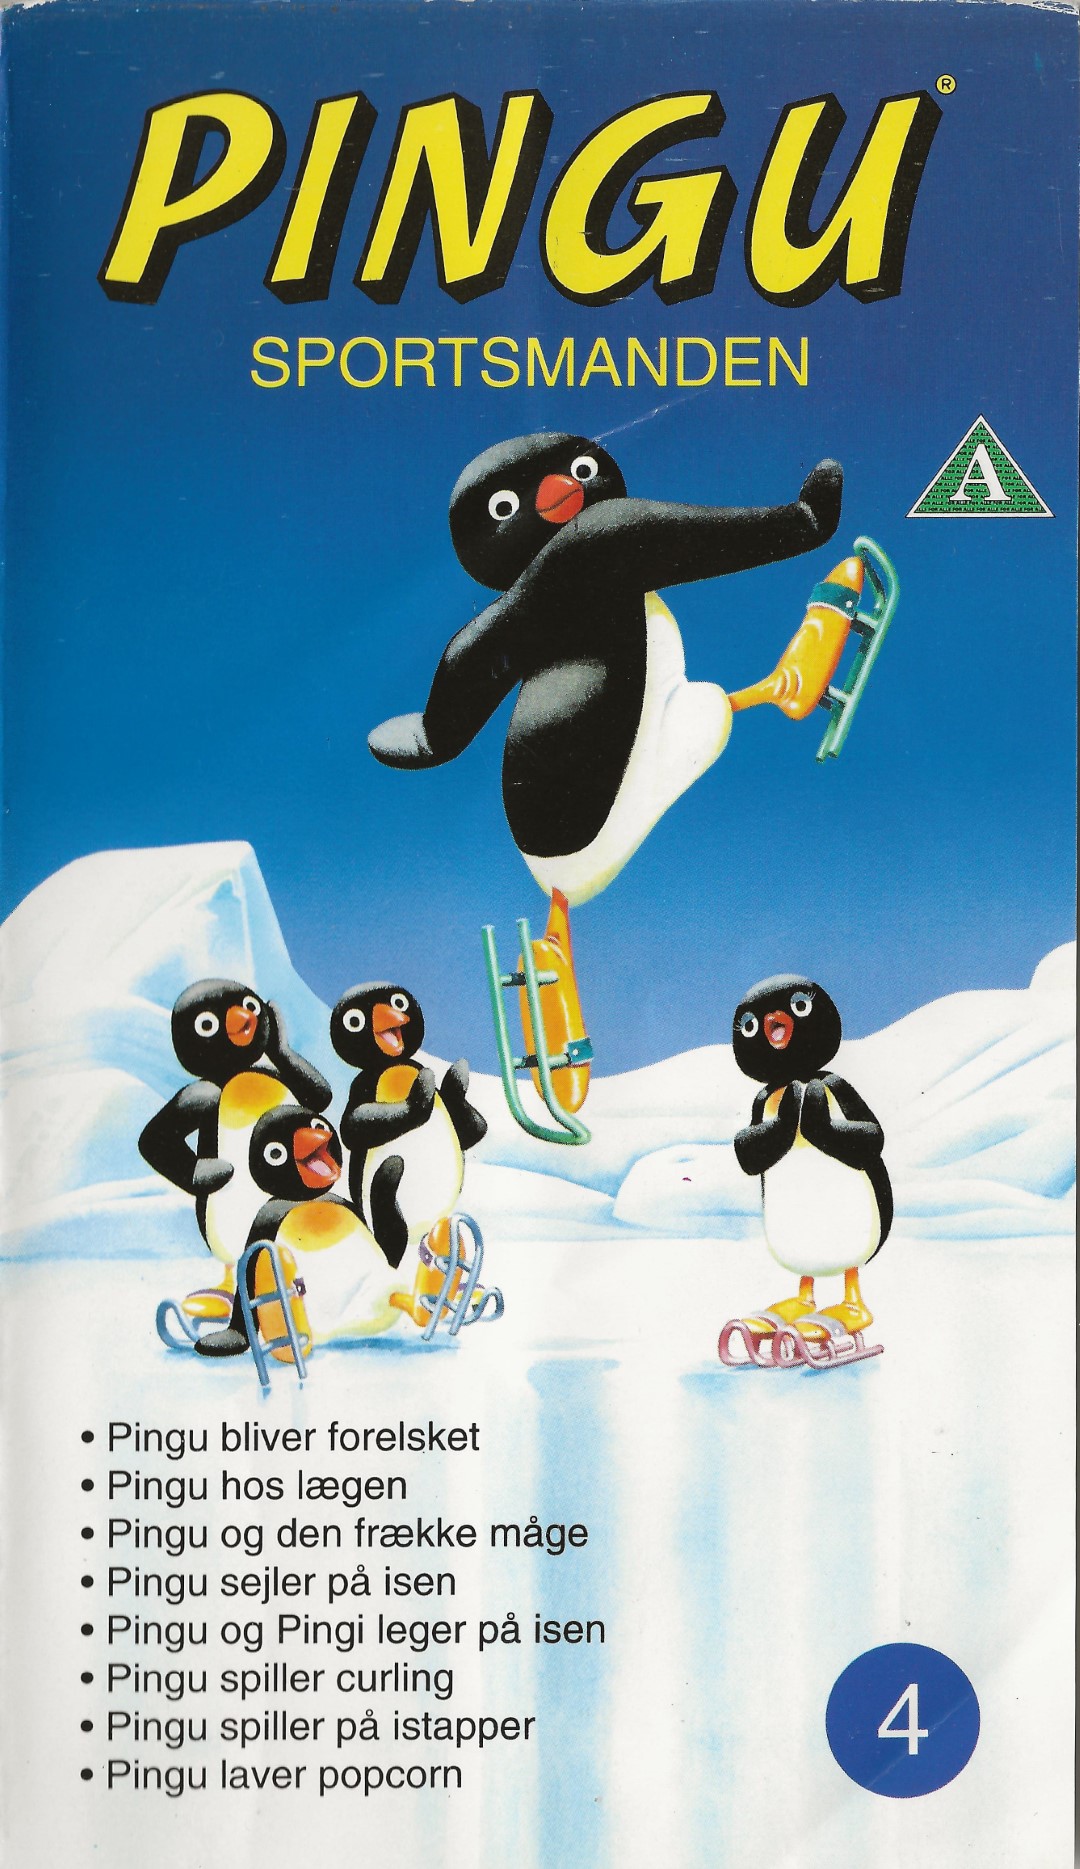 Pingu 4 - Sportsmanden  VHS BMG Video 1995